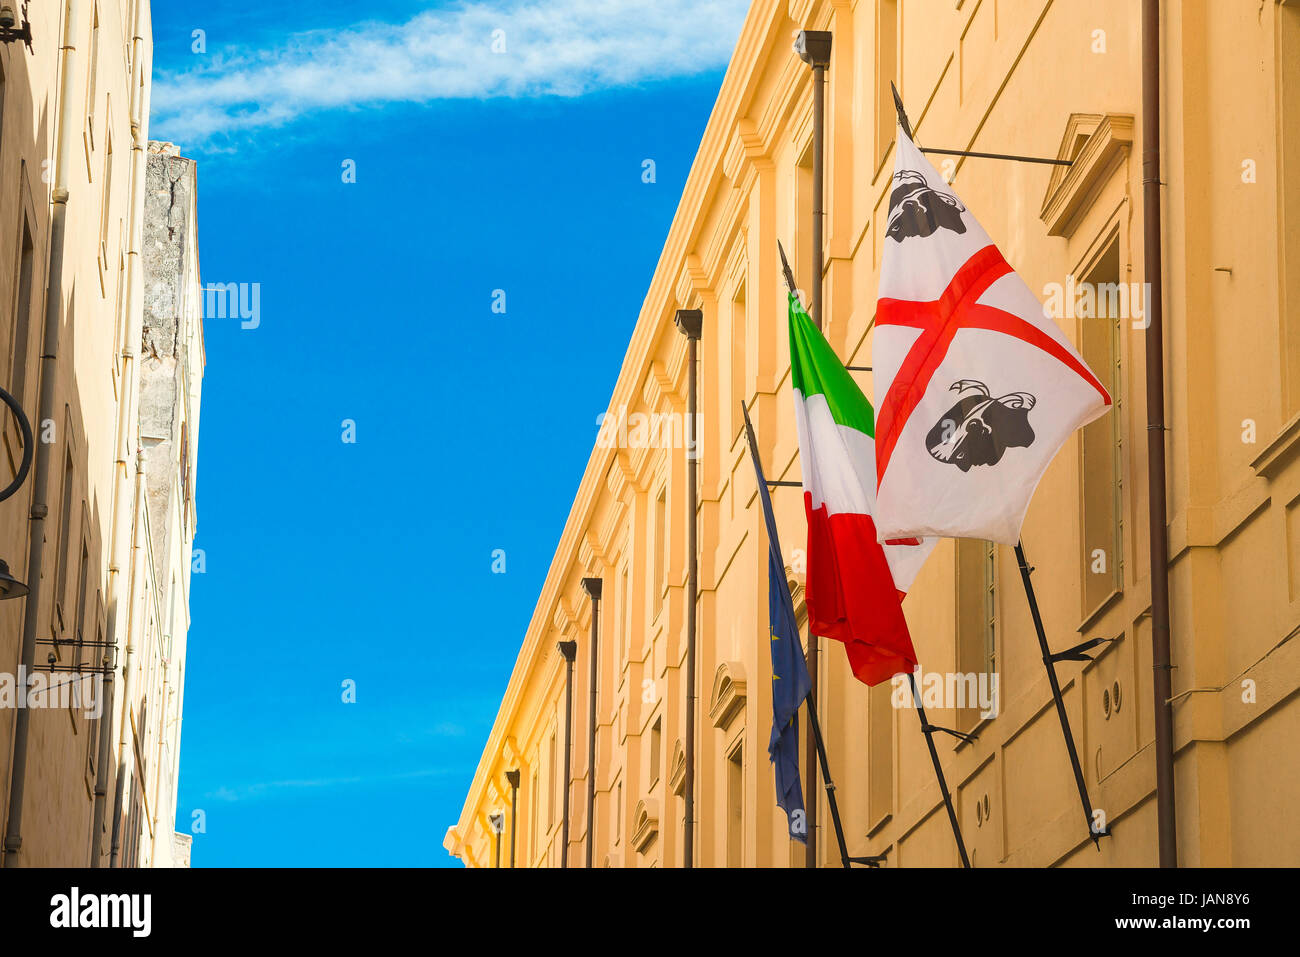 Castello Cagliari, a Sardinian and an Italian national flag sited in the Via Universita in the historic Castello quarter of Cagliari, Sardinia. Stock Photo